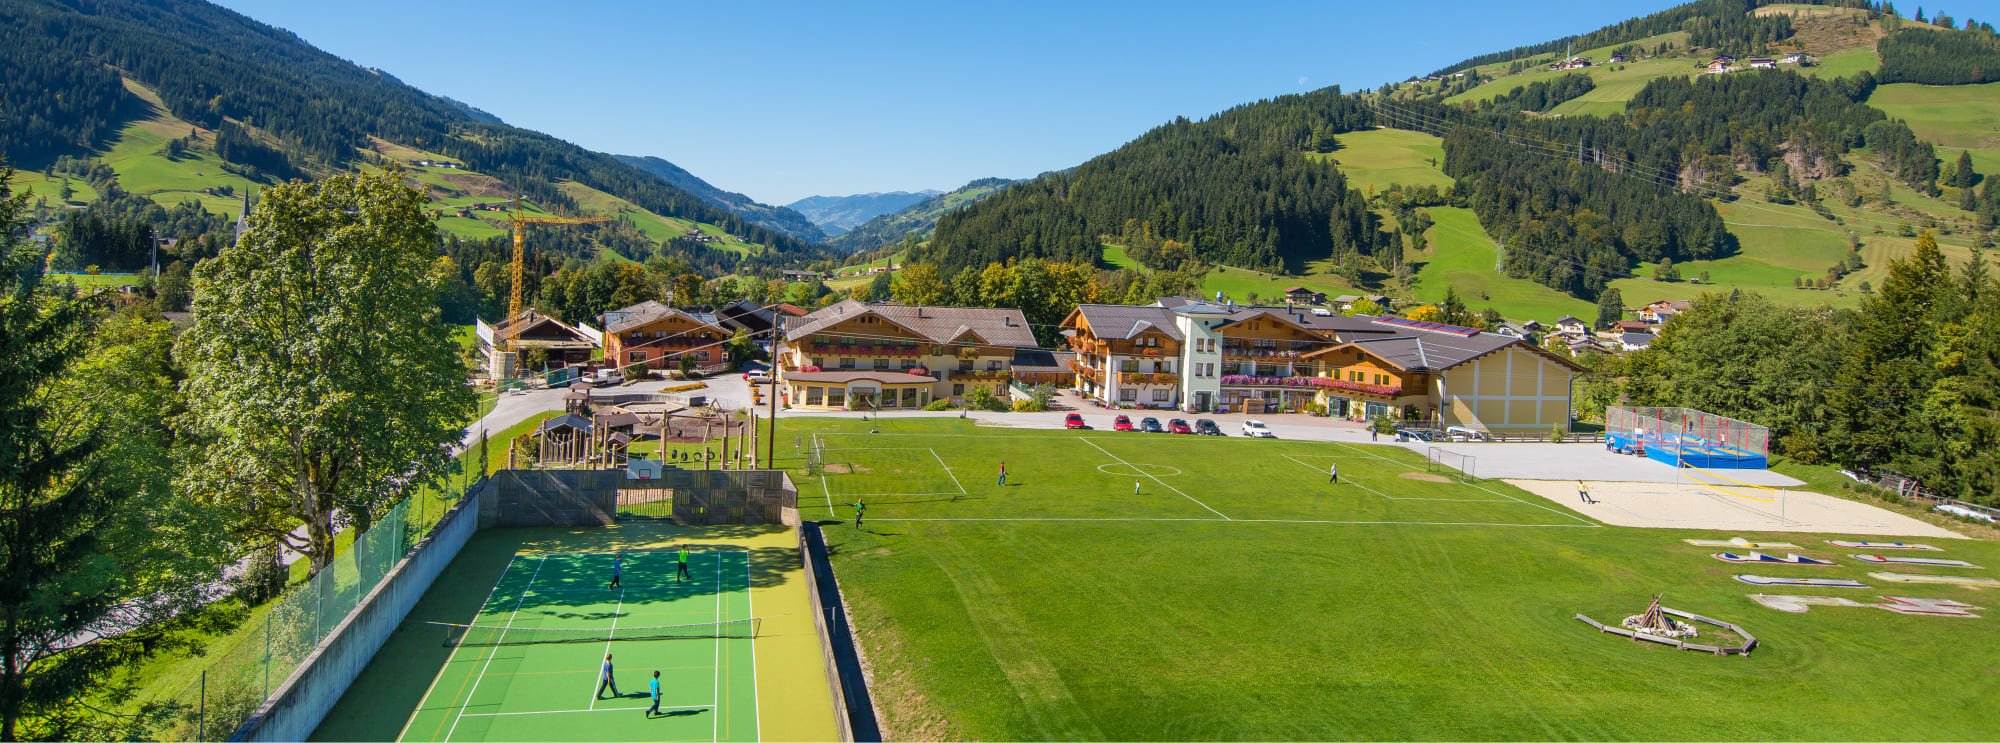 Die Jugendhotels Markushof im Sommer mit einem großen Spiel- und Sportareal in Wagrain-Kleinarl, Salzburger Land